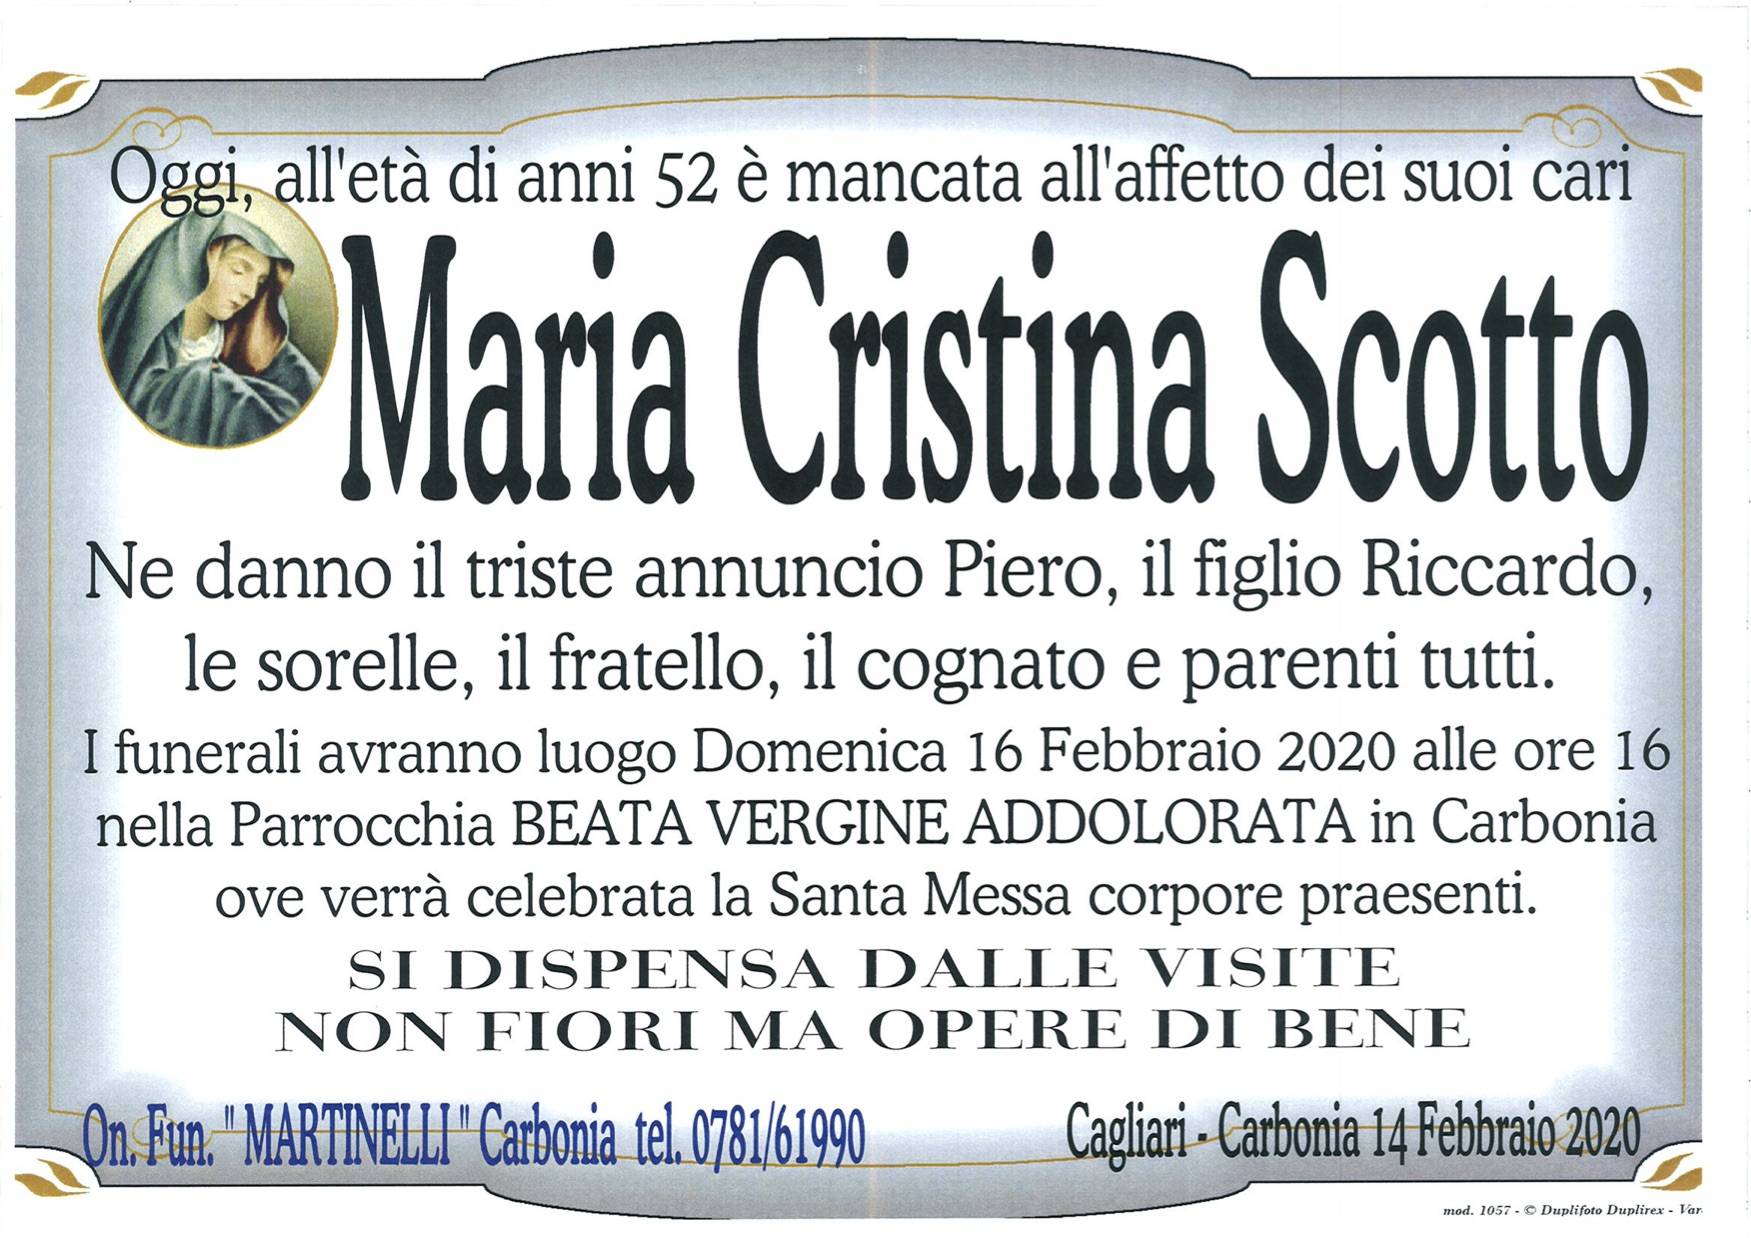 Maria Cristina Scotto